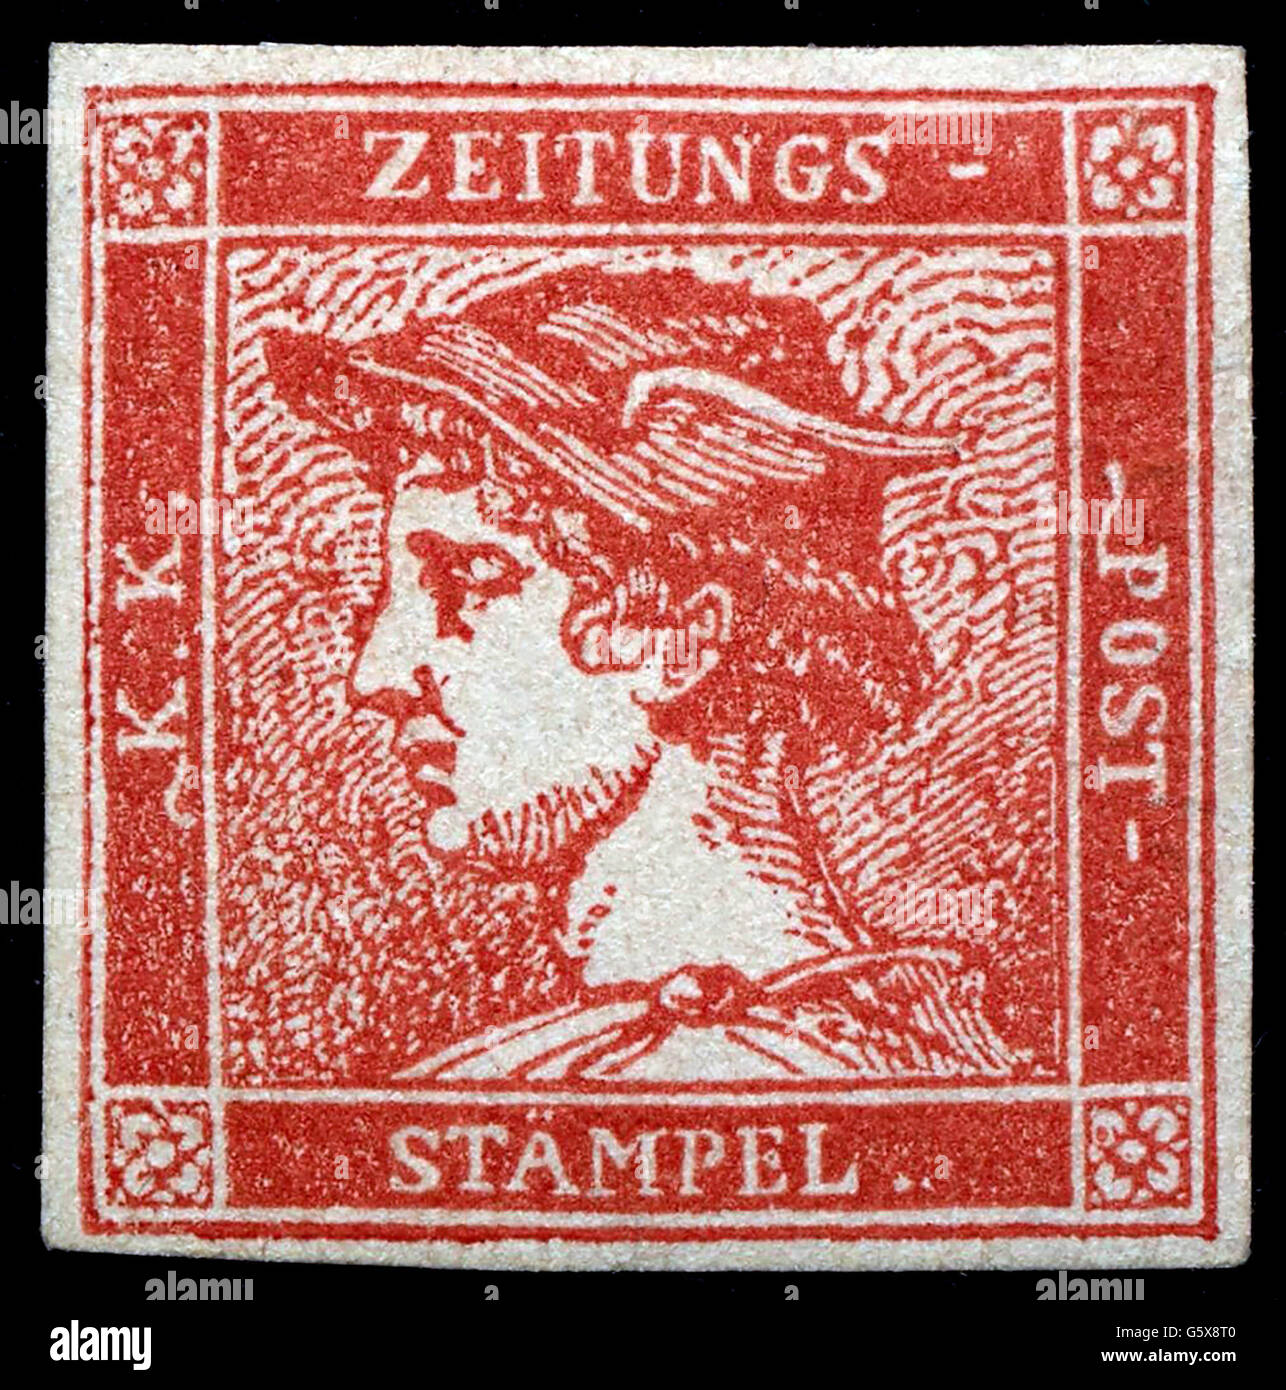 Posta, francobolli, Austria, francobollo Red Mercury, disegno: Josef Axmann  (1793 - 1873), data di emissione: 1850, diritti-aggiuntivi-non disponibili  Foto stock - Alamy